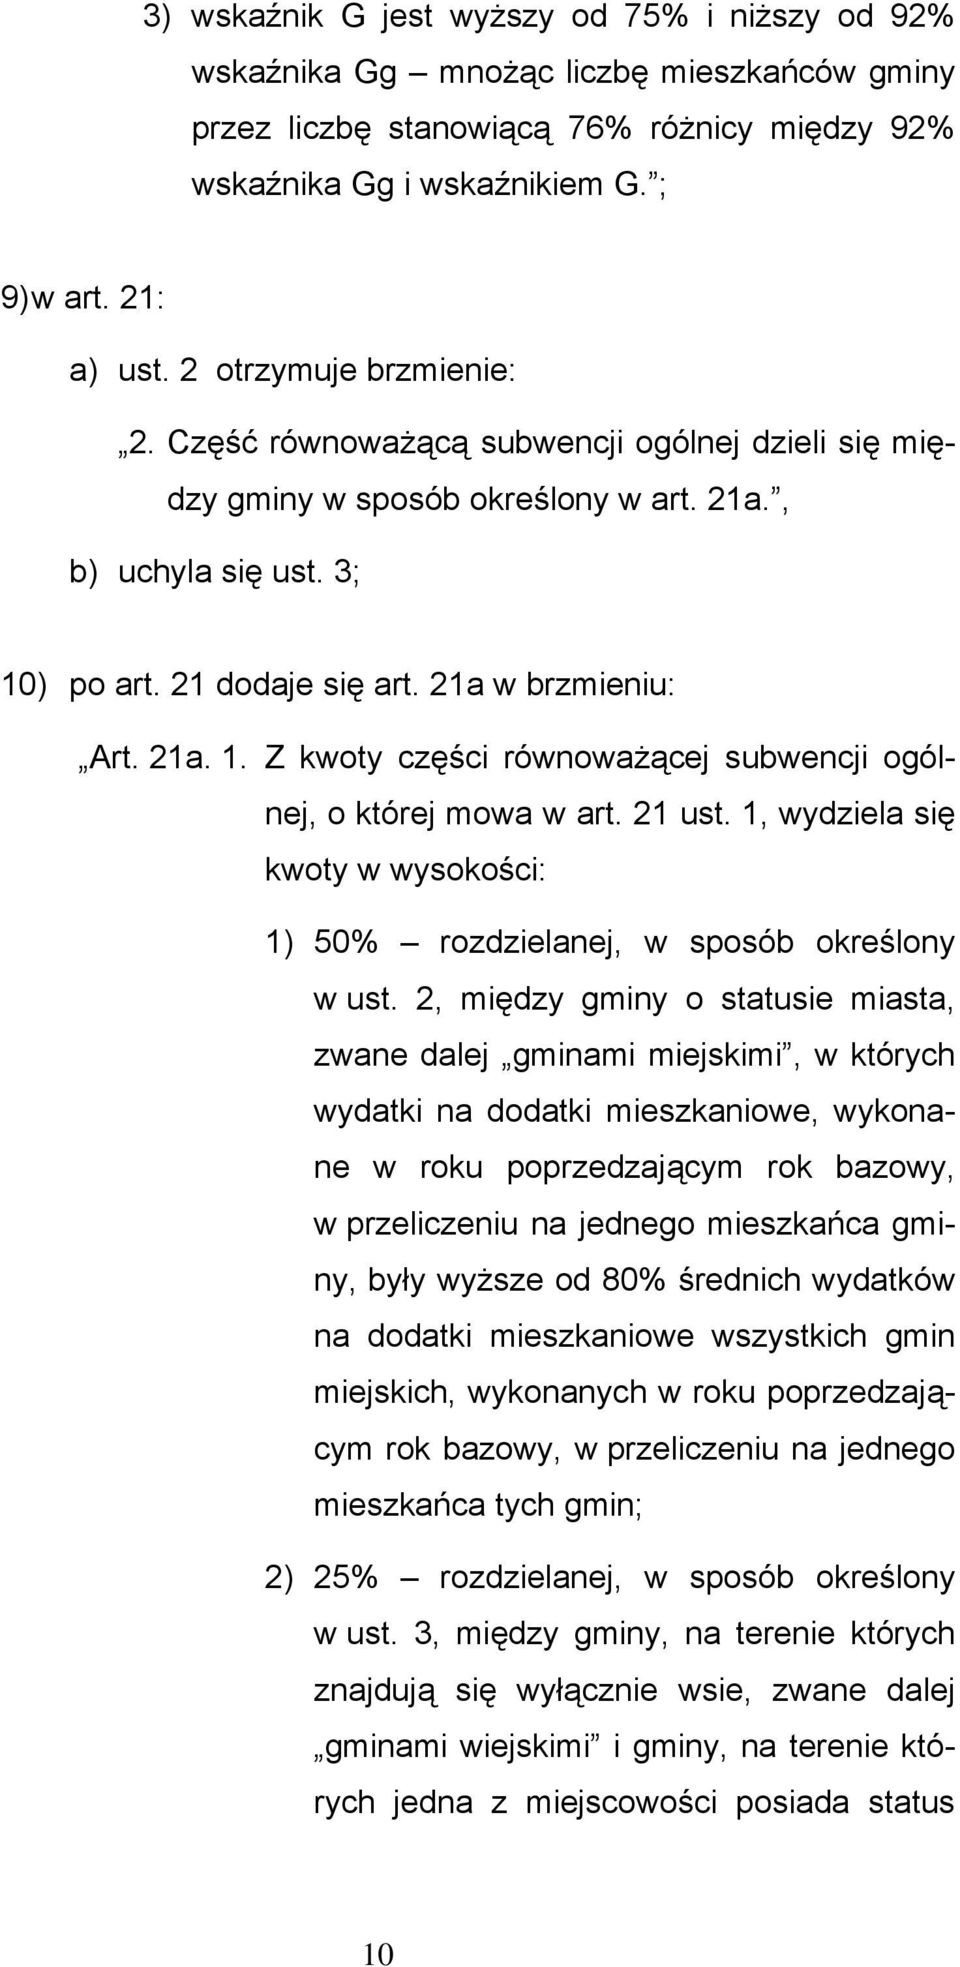 ) po art. 21 dodaje się art. 21a w brzmieniu: Art. 21a. 1. Z kwoty części równoważącej subwencji ogólnej, o której mowa w art. 21 ust.